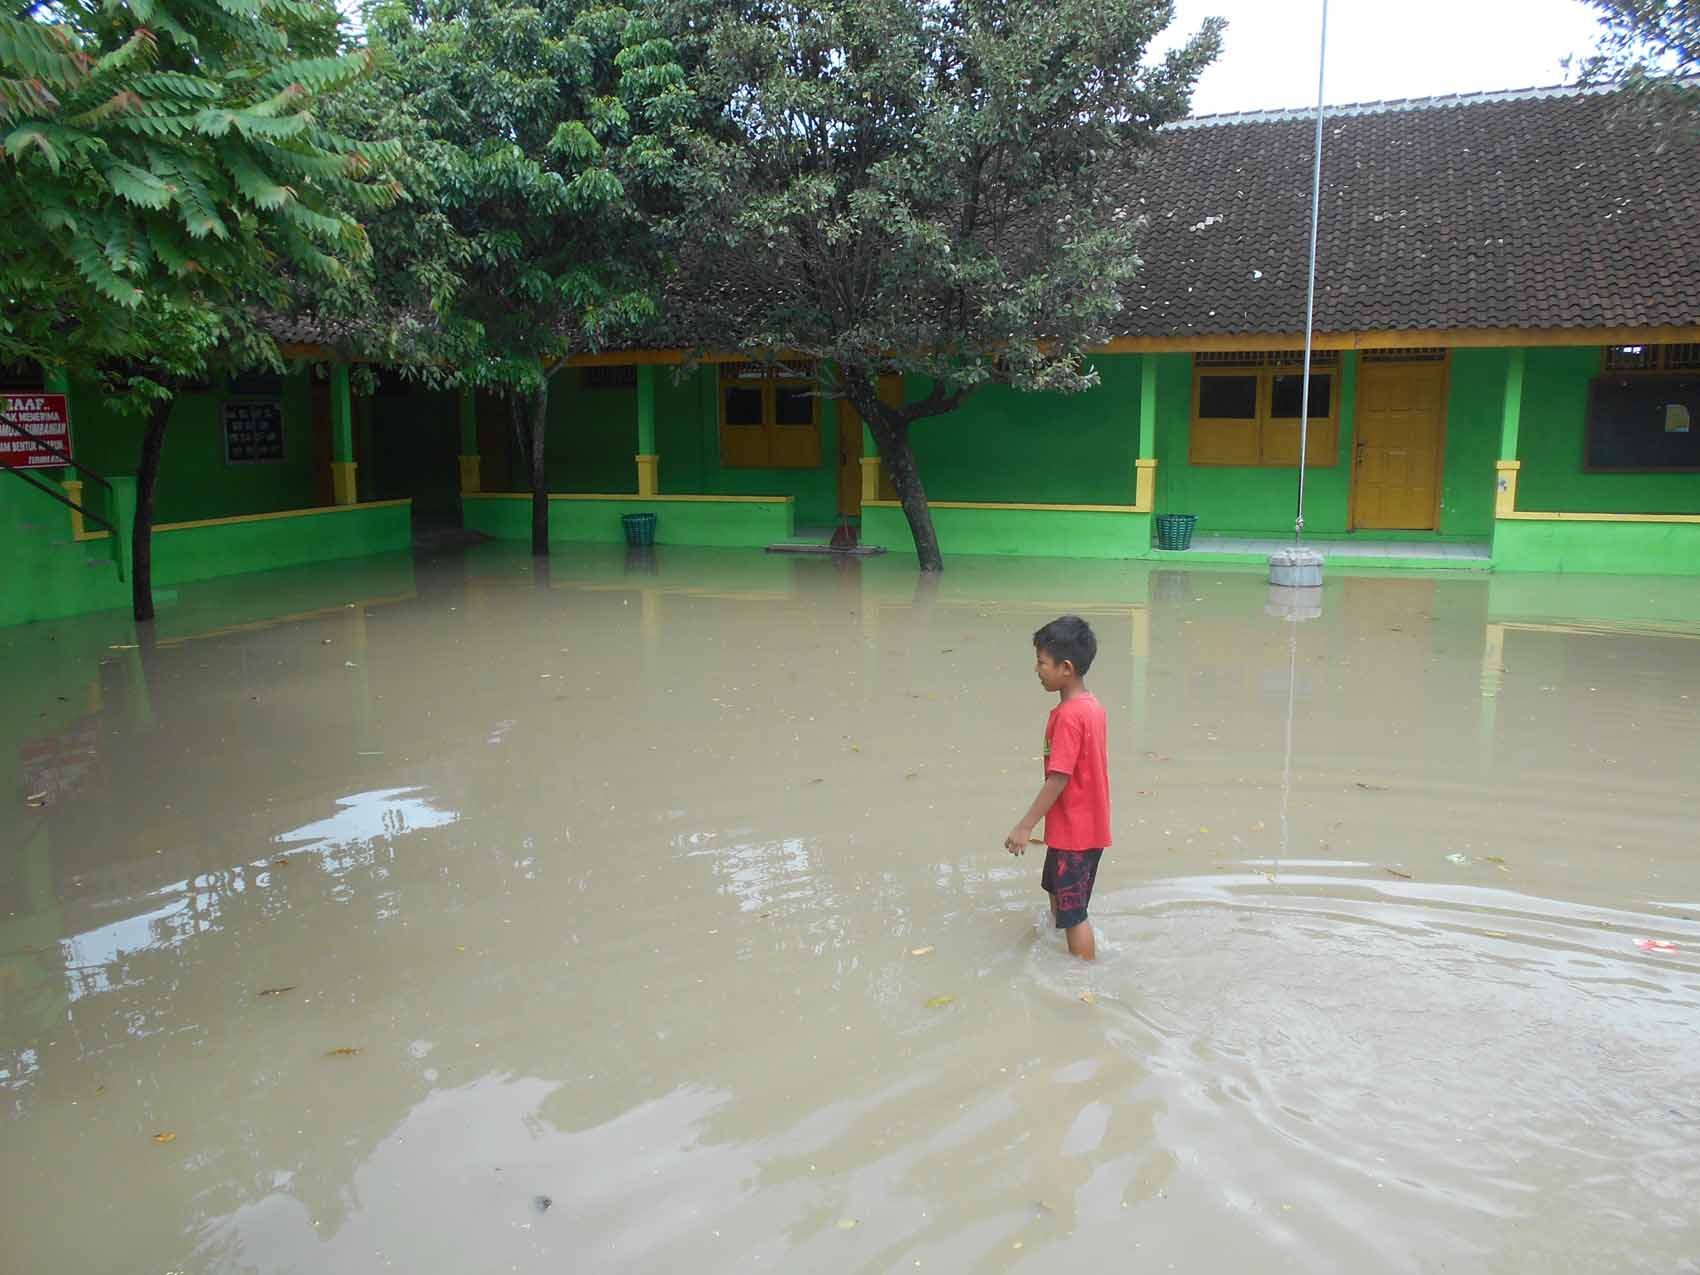 Banyak sekolah yang meliburkan siswa dan siswi mereka karena banjir yang merendam halaman dan gedung sekolah di Sukoharjo. Foto oleh Fariz Fardianto/Rappler 